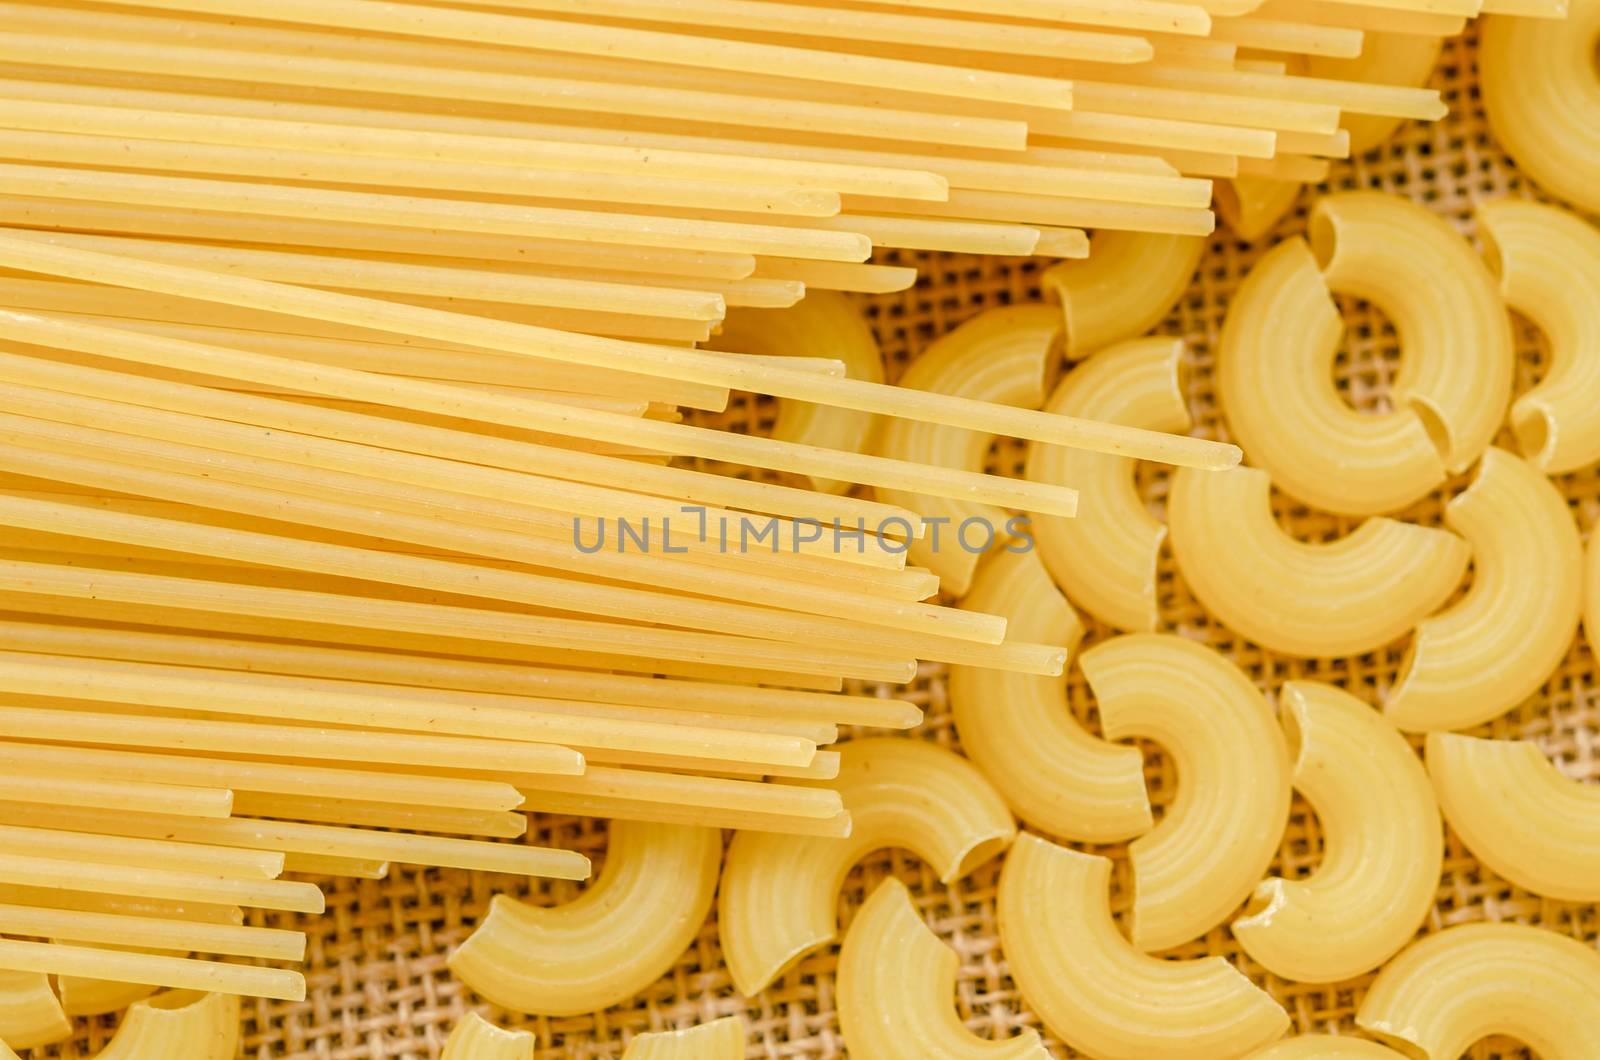 Raw spaghetti and Elbow macaroni noodles on sack background.